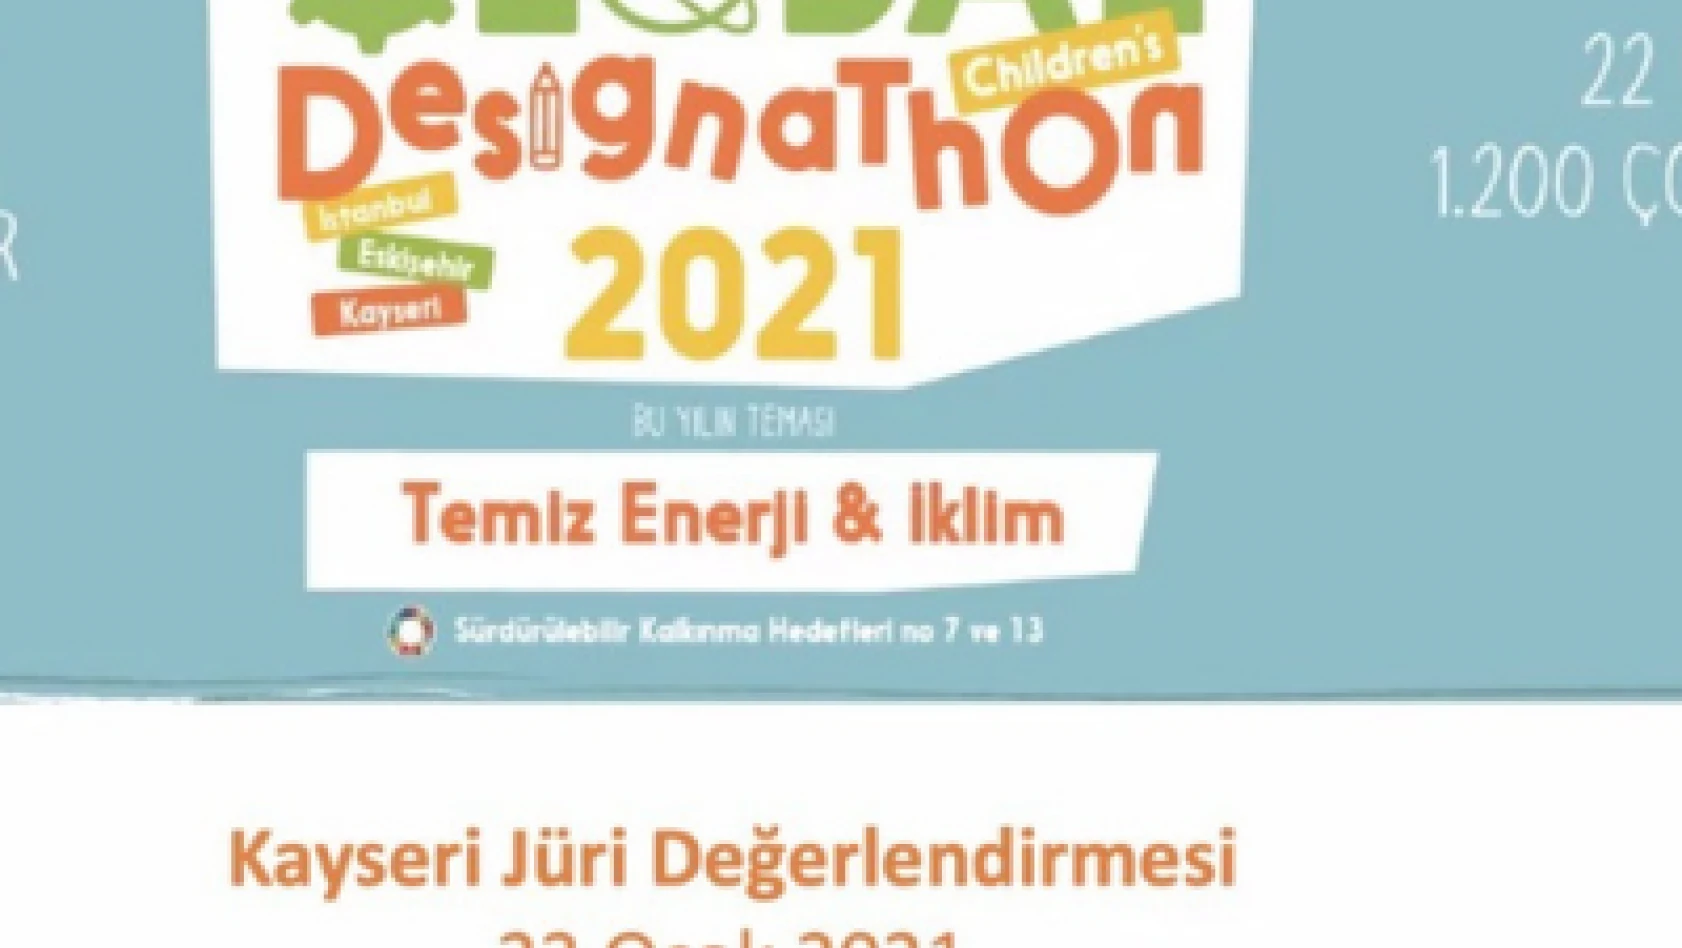 Çocukların Küresel Tasarım Maratonu 2021 gerçekleştirildi